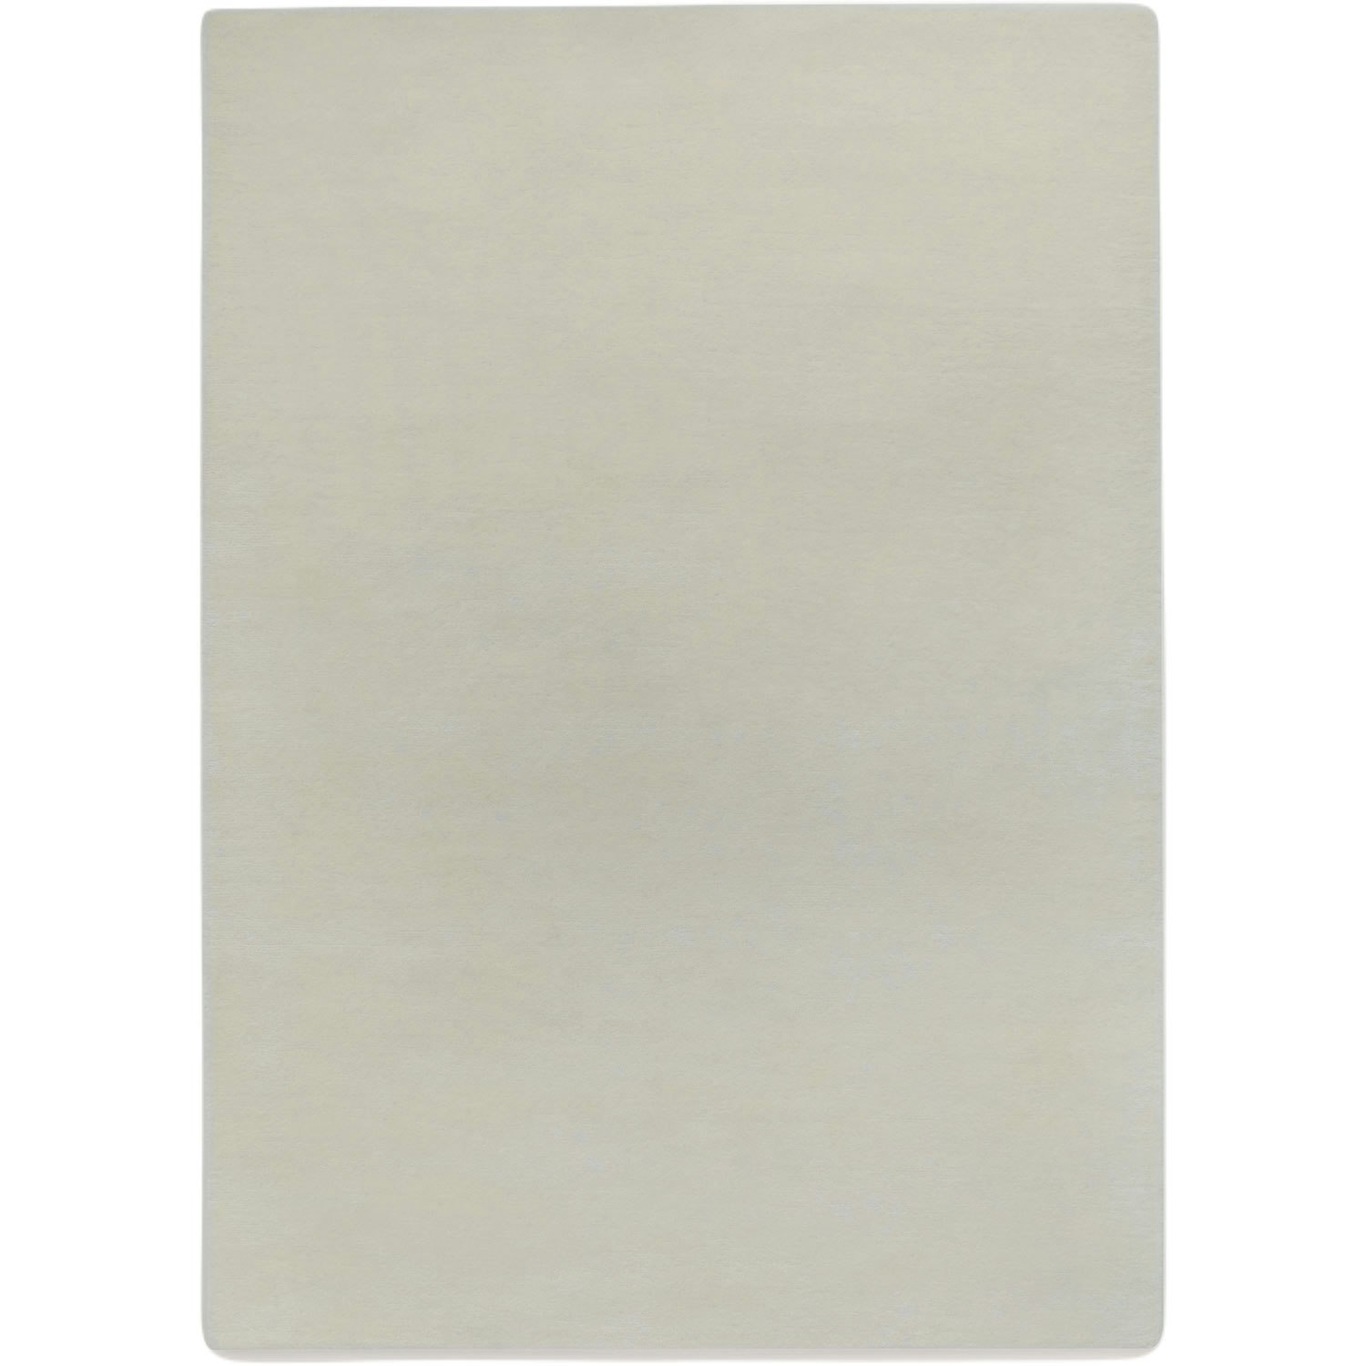 Liljehok Ullmatta Off-white, 300x200 cm